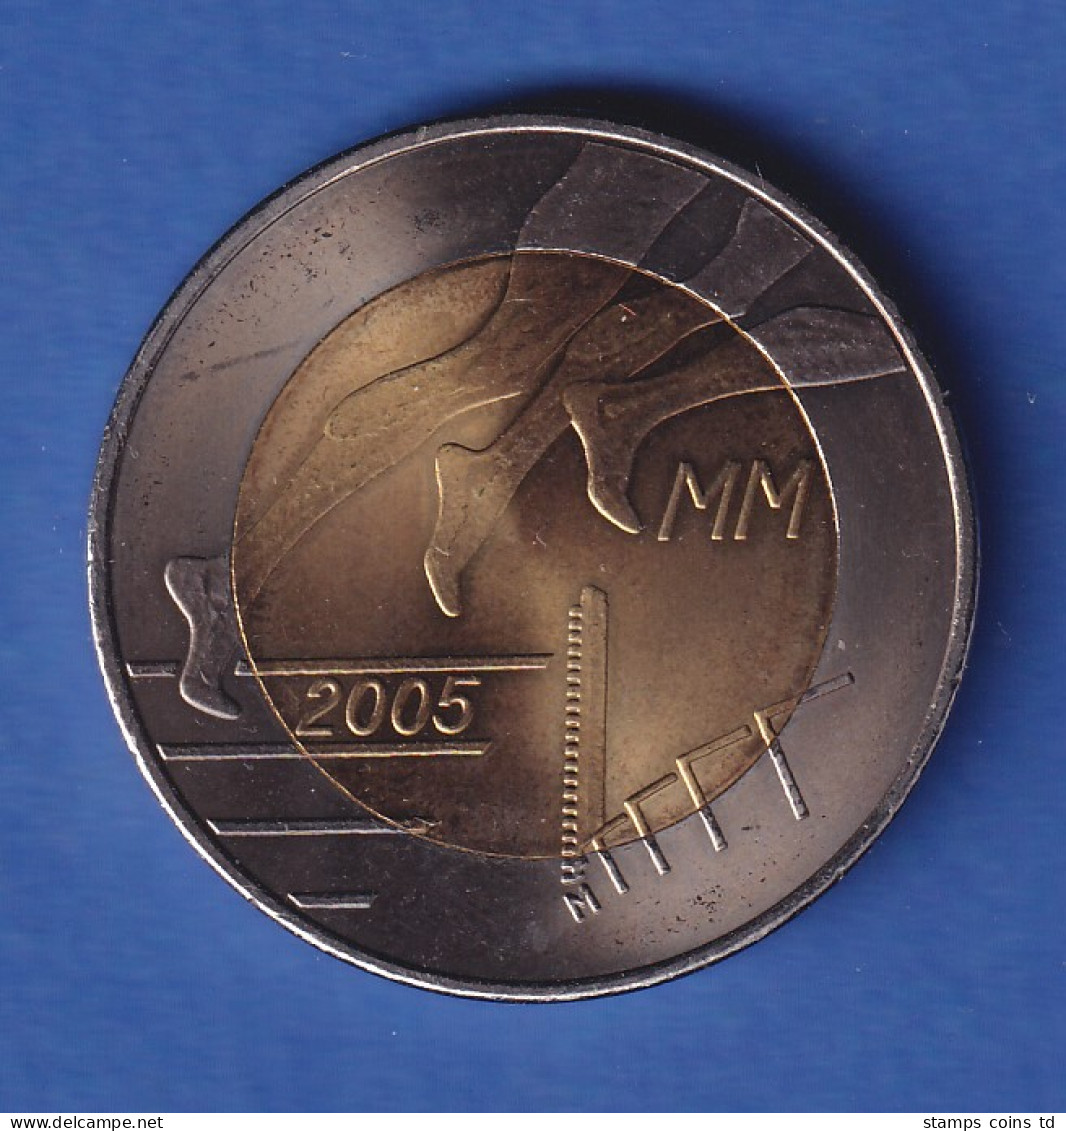 Finnland 2005 Leichtathletik-WM  5-Euro-Sondermünze  - Finland